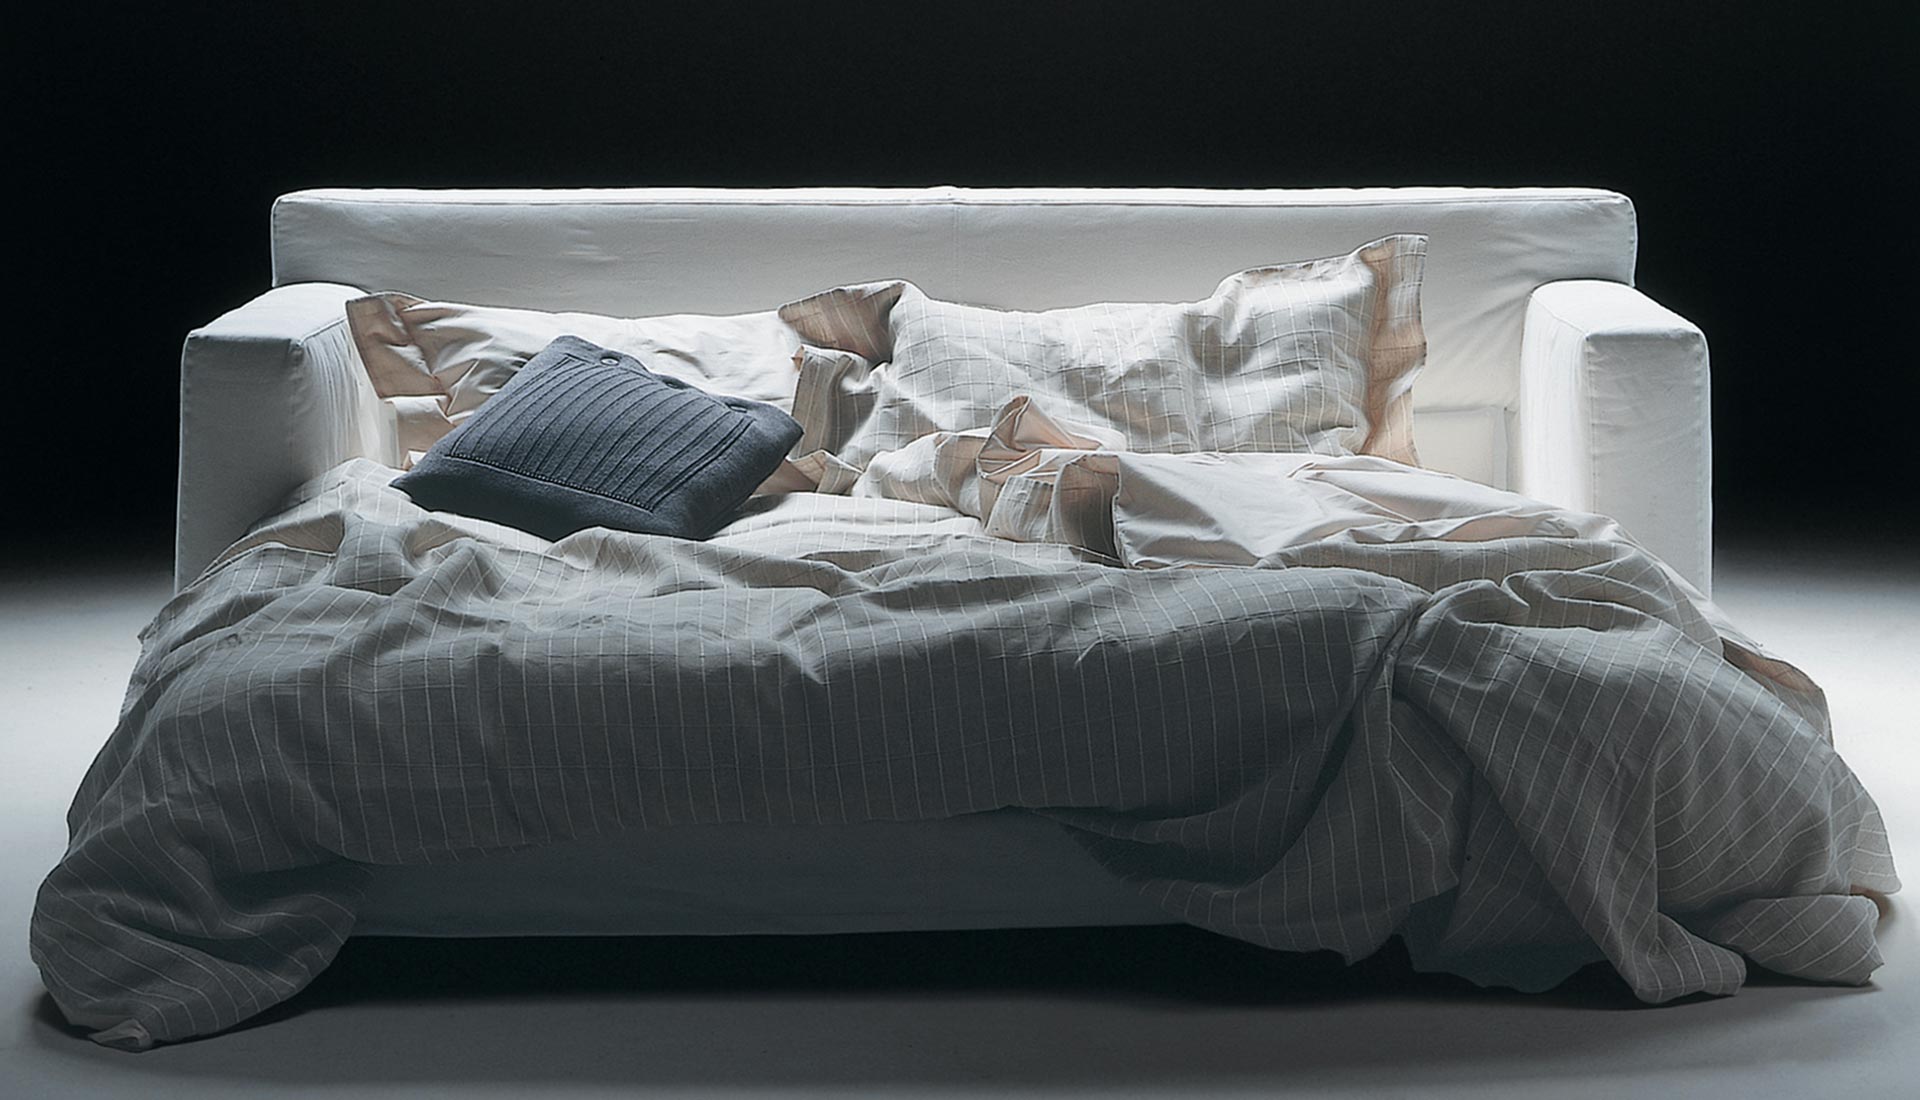 Sofa Beds - Gerosa Design